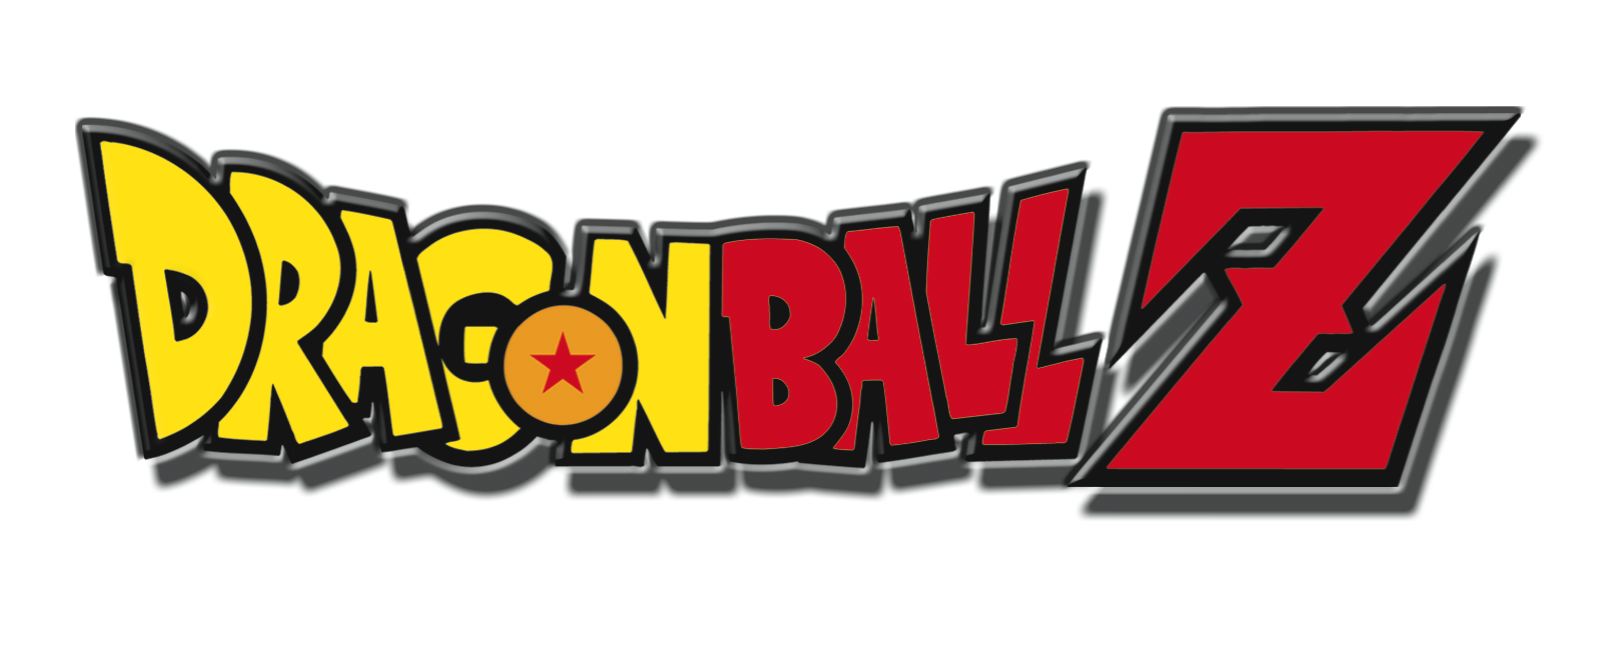 Dragon Ball Z Logos